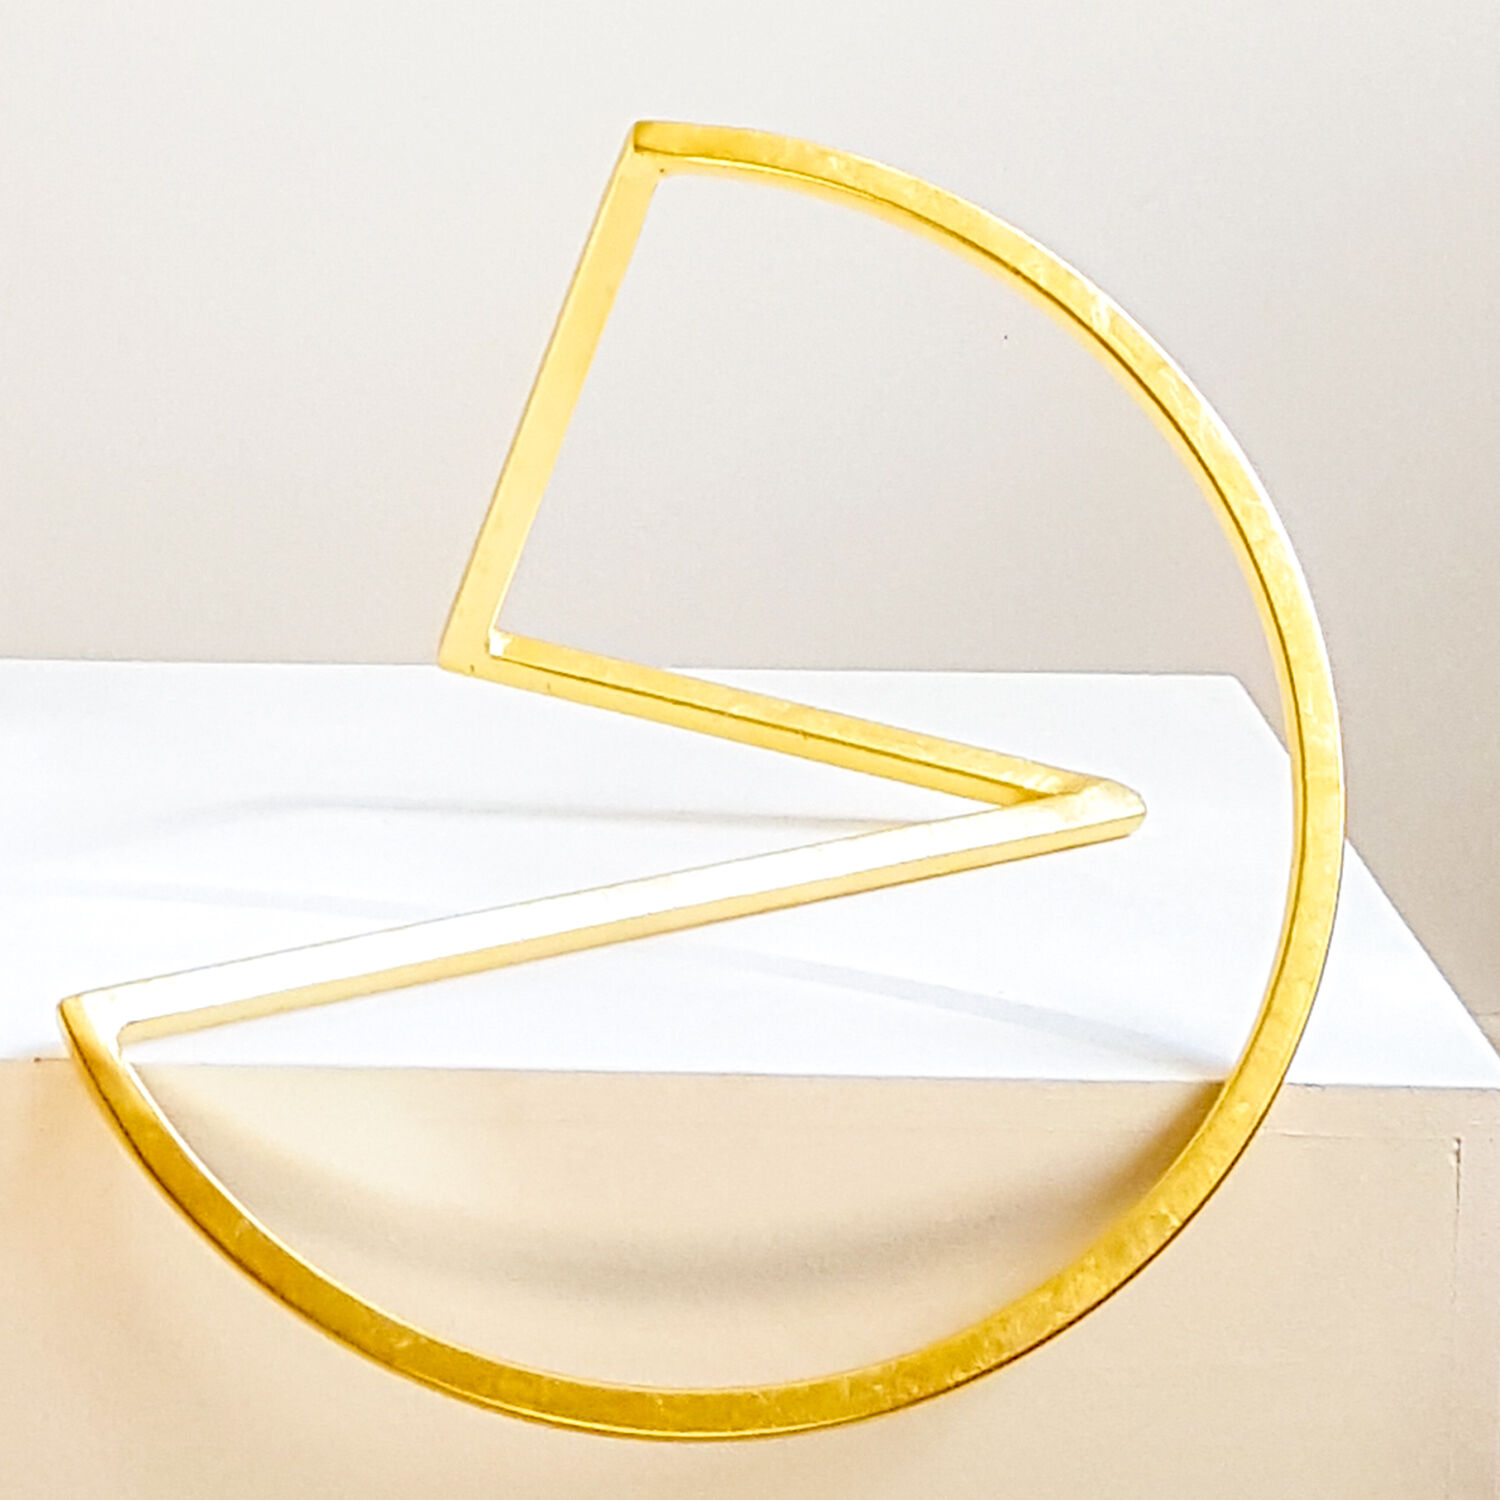 Skulptur "Loop 35 - Gold Edition" (2015) von Sonja Edle von Hoeßle